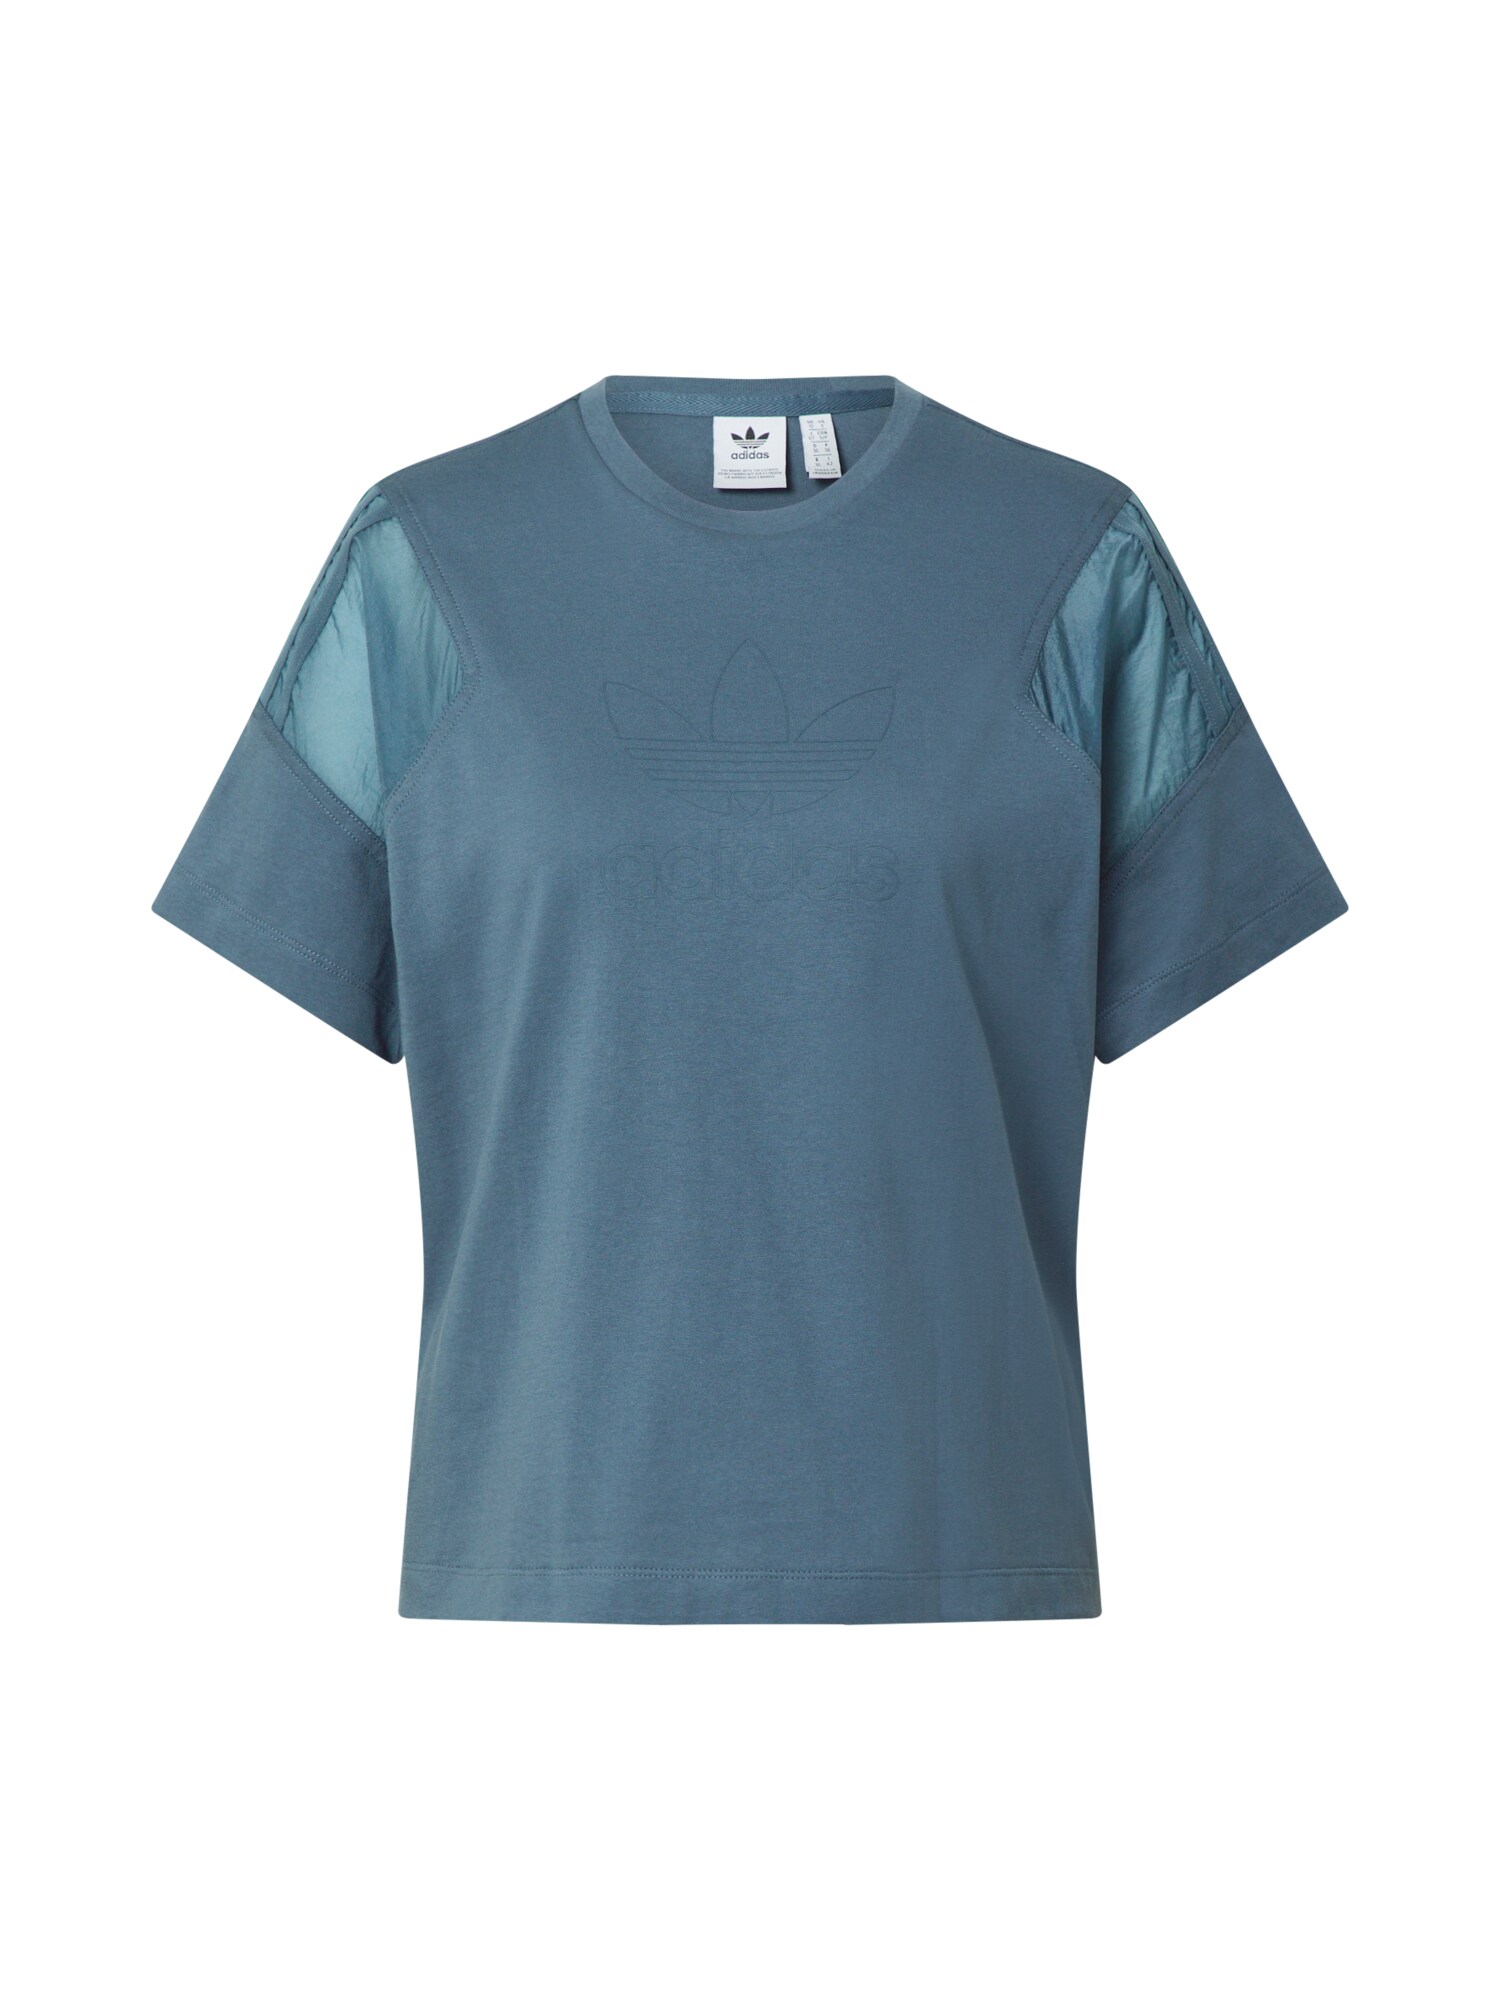 ADIDAS ORIGINALS Marškinėliai  mėlyna dūmų spalva